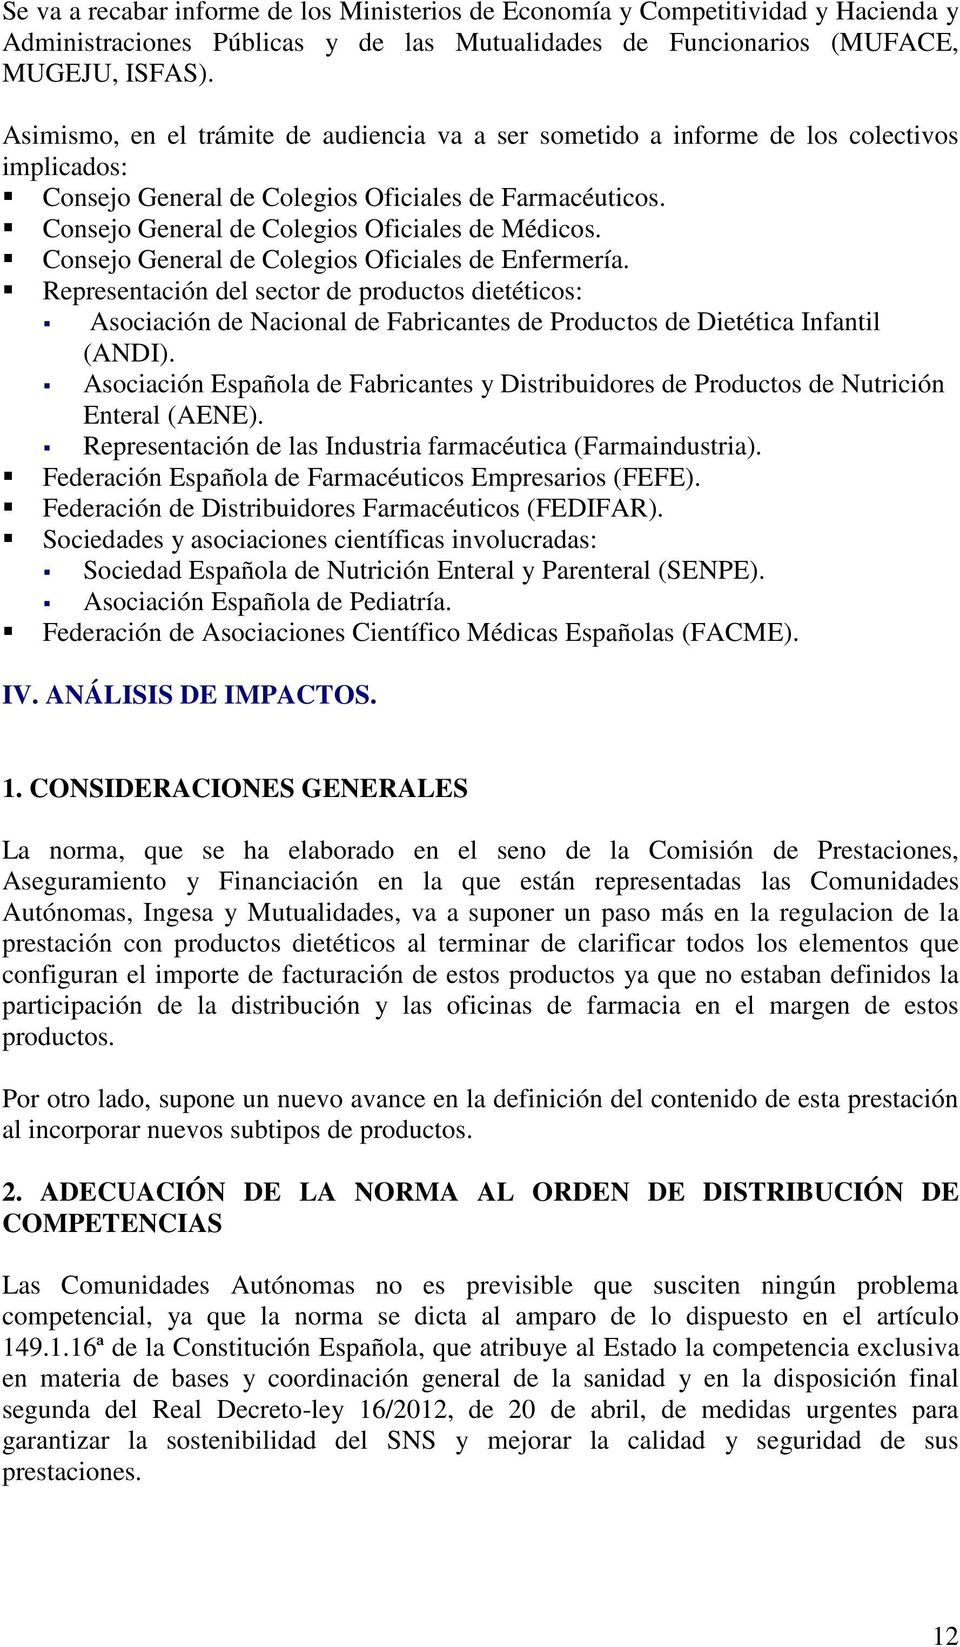 Consejo General de Colegios Oficiales de Enfermería. Representación del sector de productos dietéticos: Asociación de Nacional de Fabricantes de Productos de Dietética Infantil (ANDI).